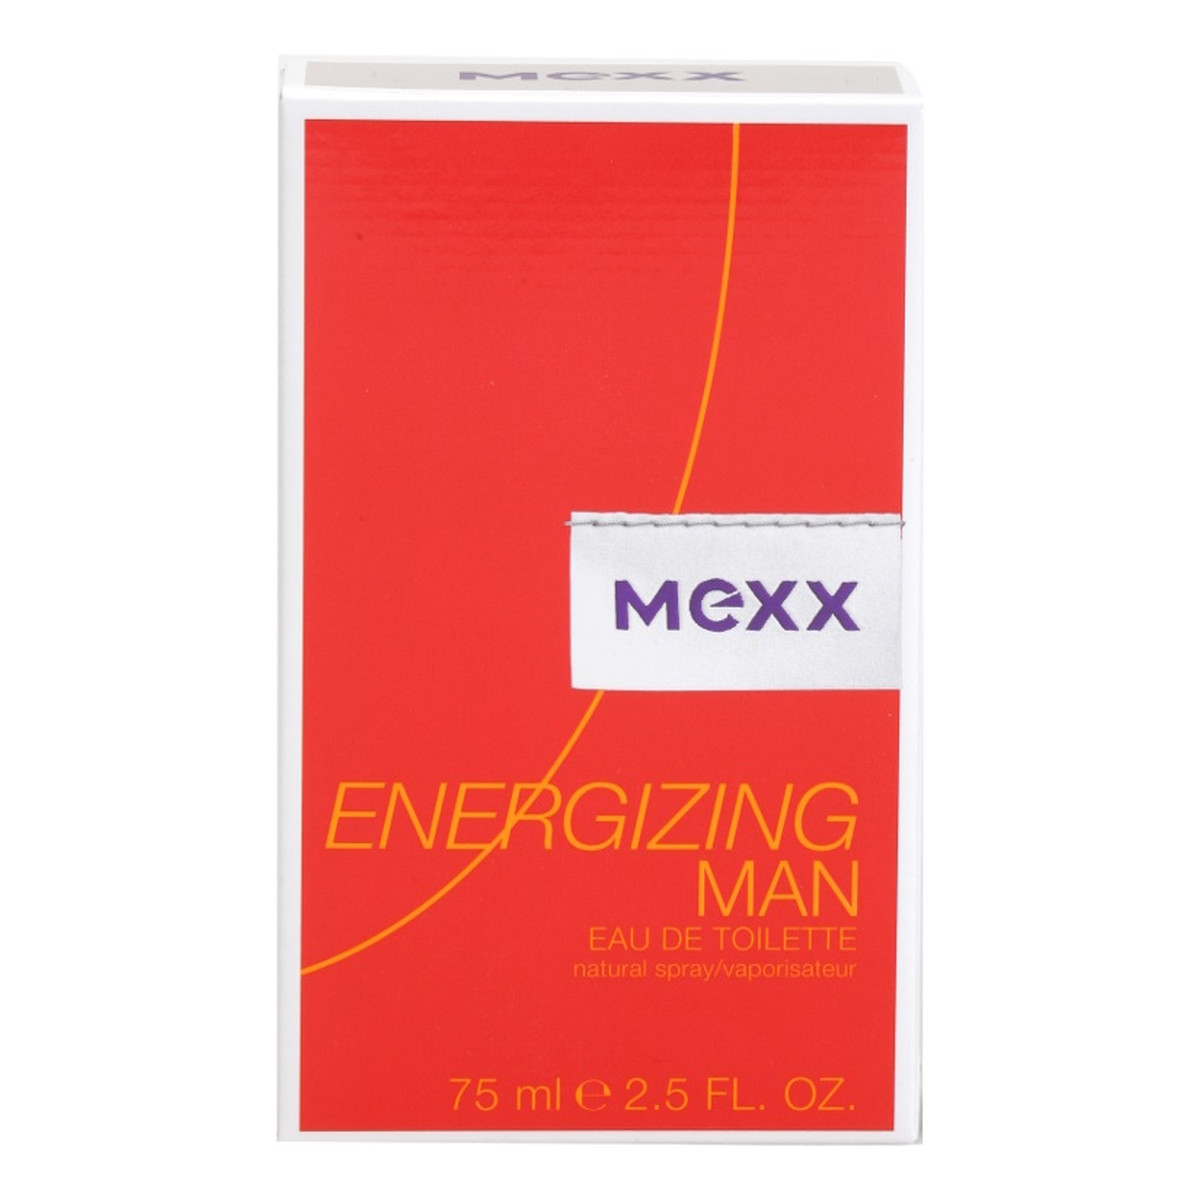 Mexx Energizing Man woda toaletowa dla mężczyzn 75ml